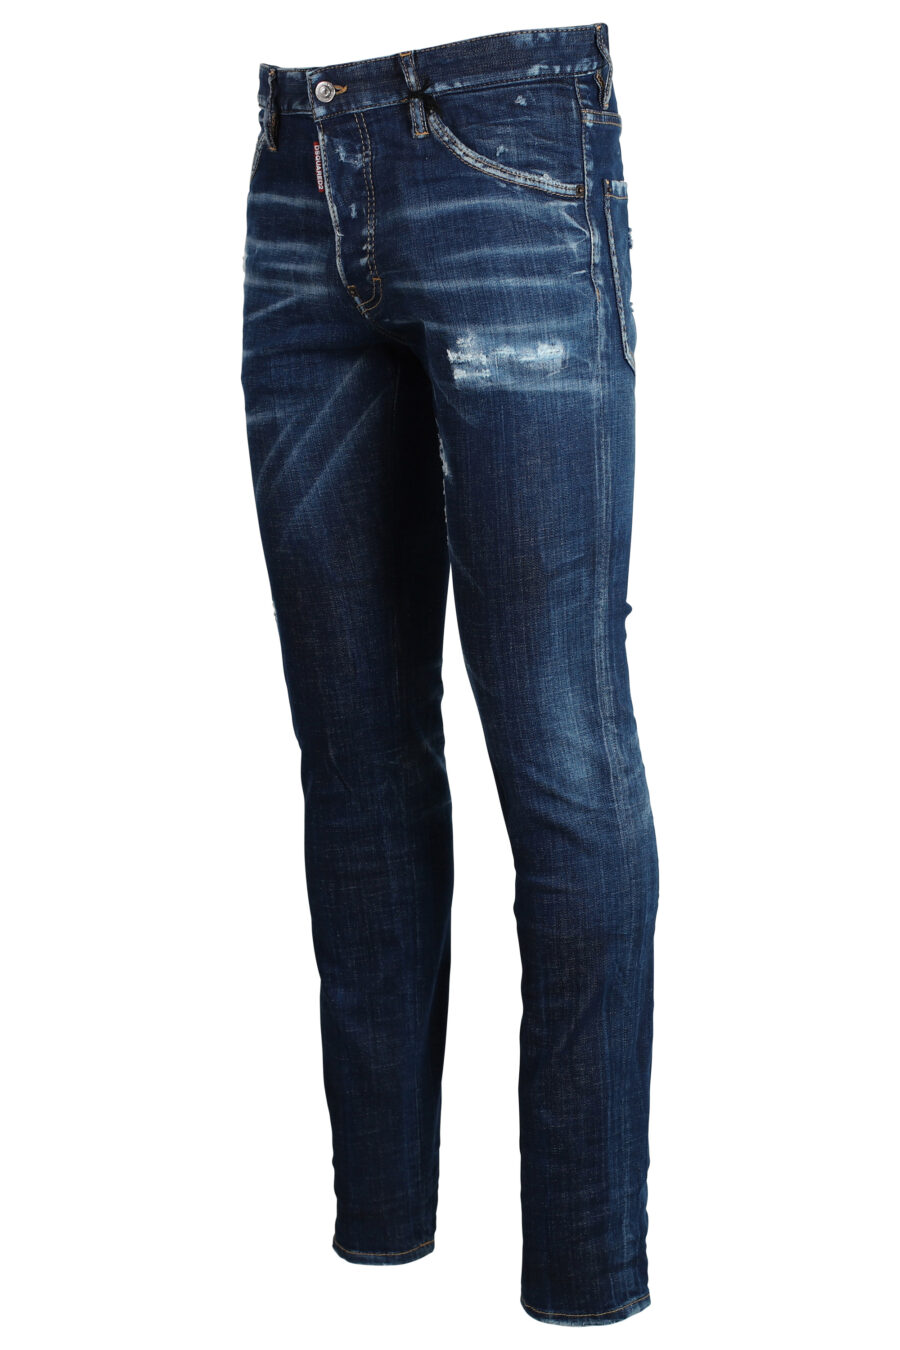 Icon cool guy" Jeans dunkelblau semi-getragen - 8052134643259 2